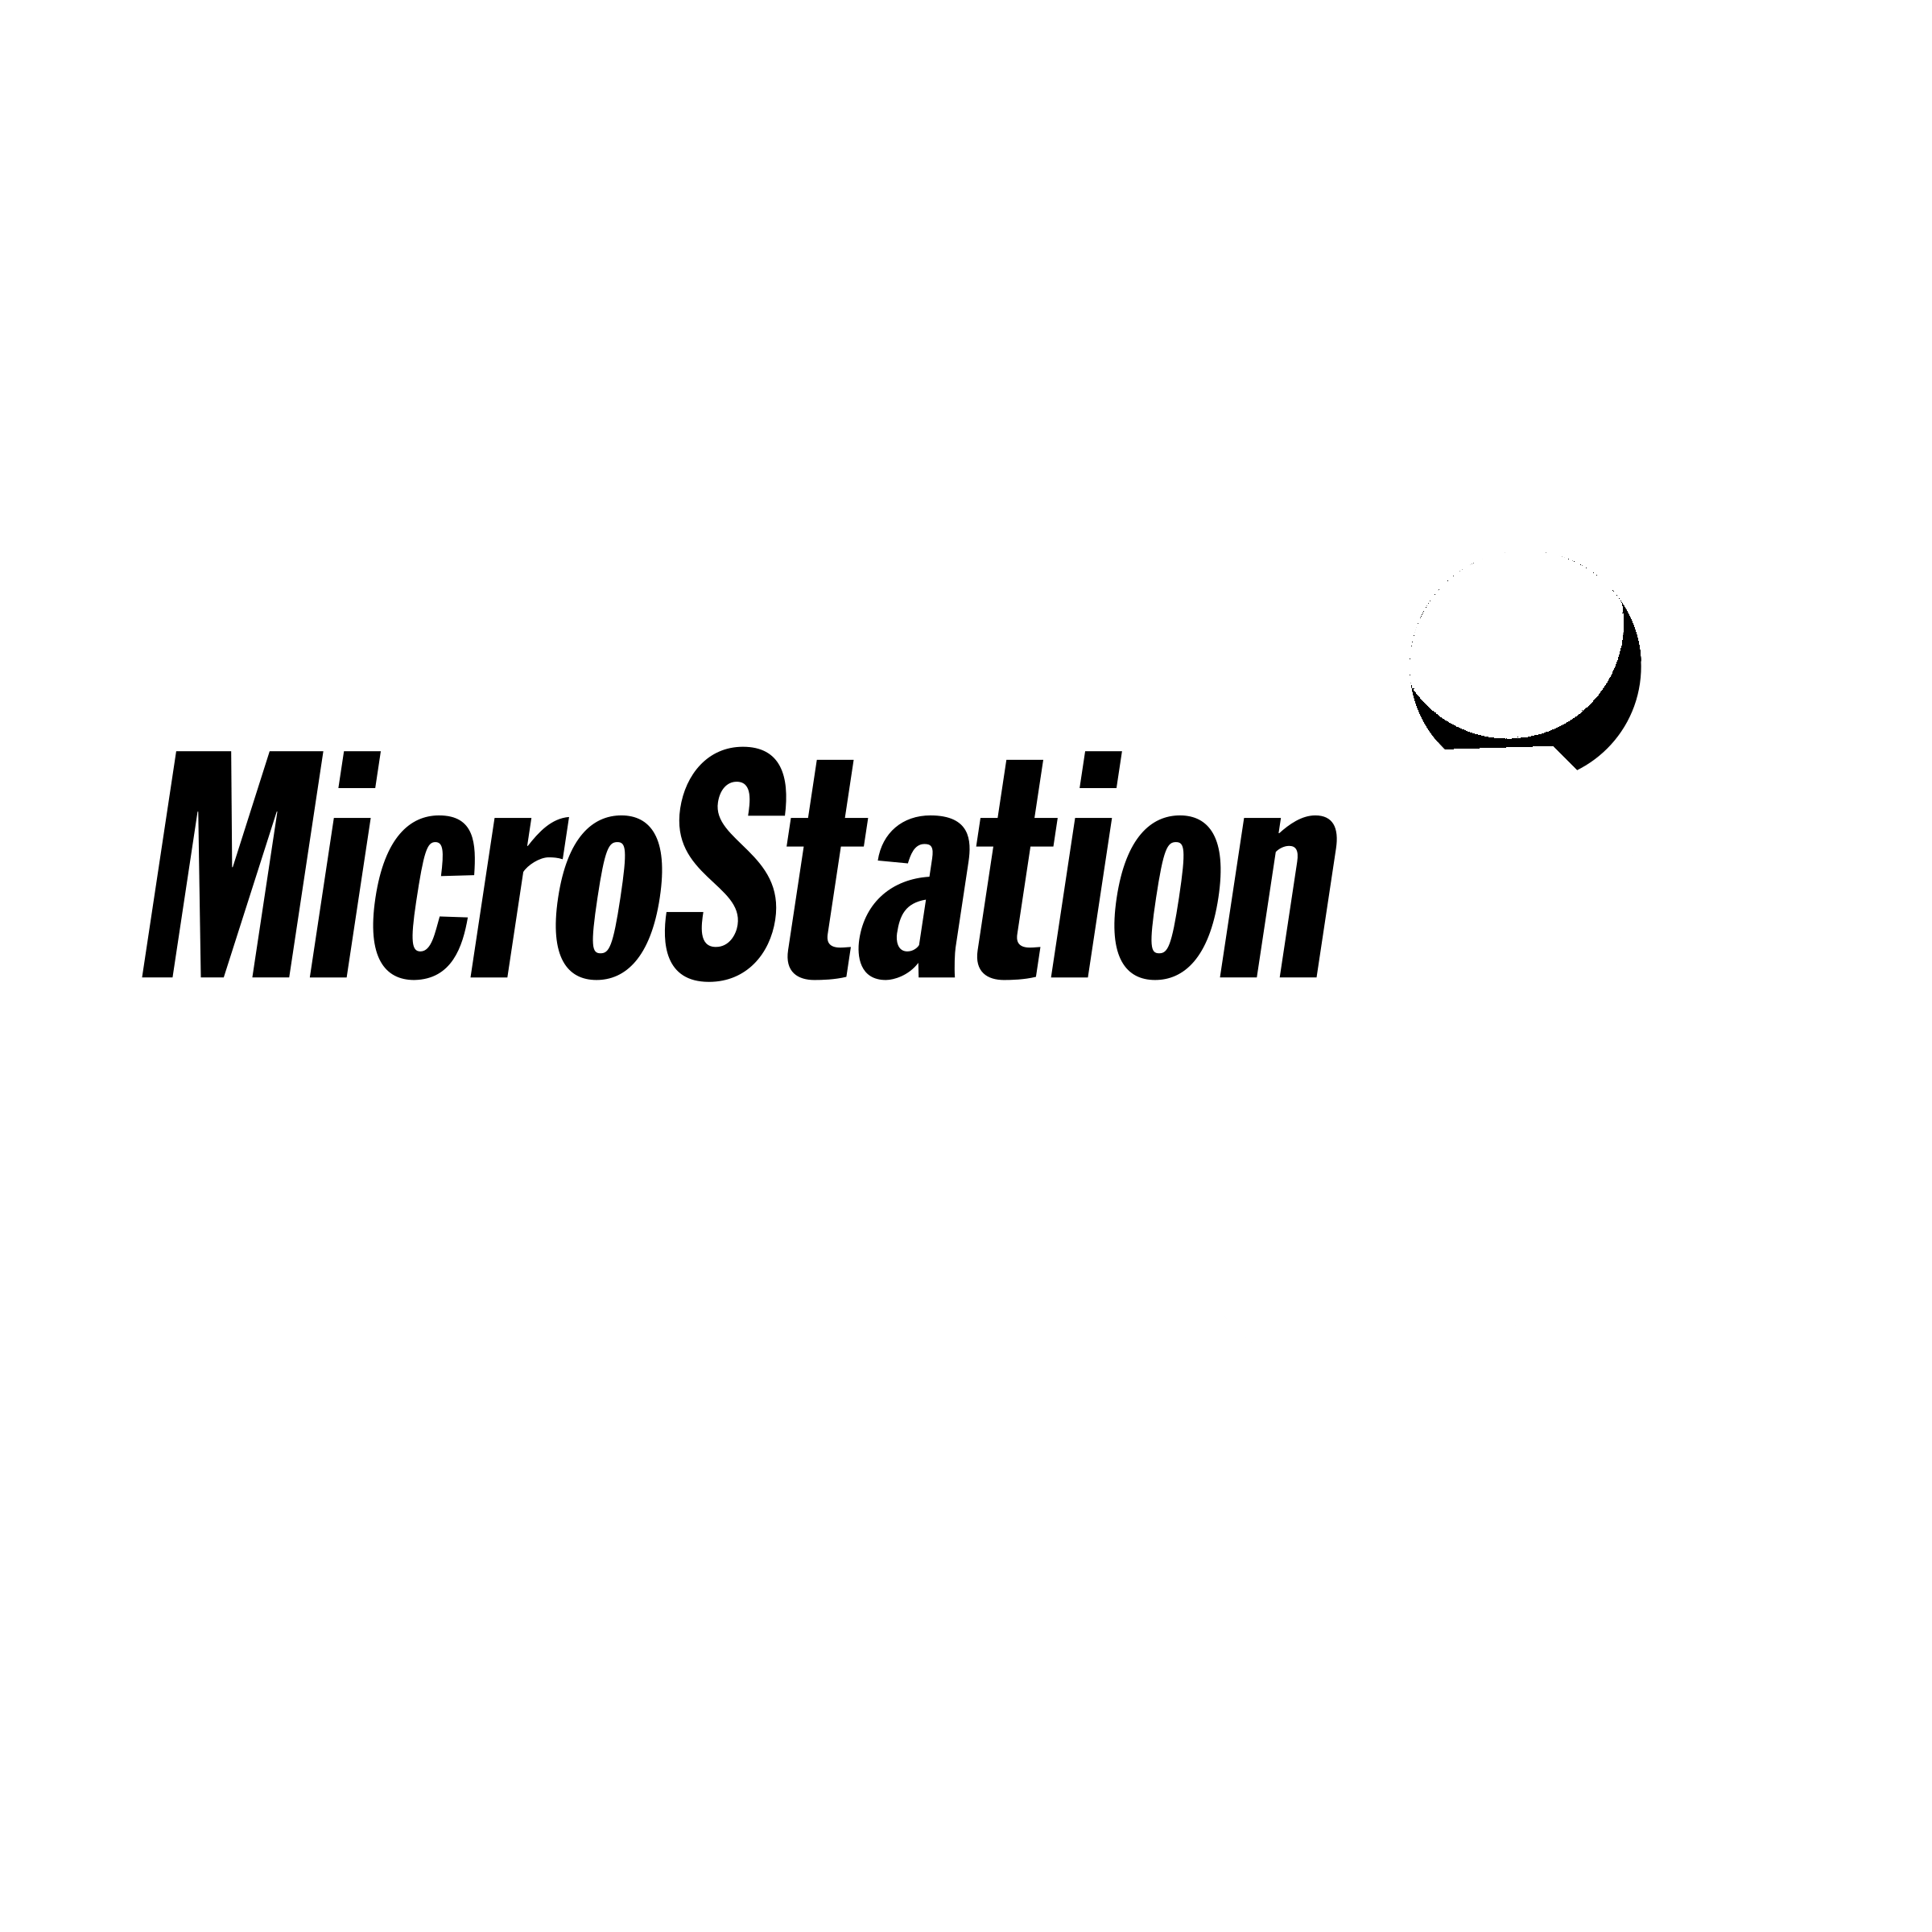 MicroStation Logo - MicroStation Logo PNG Transparent & SVG Vector